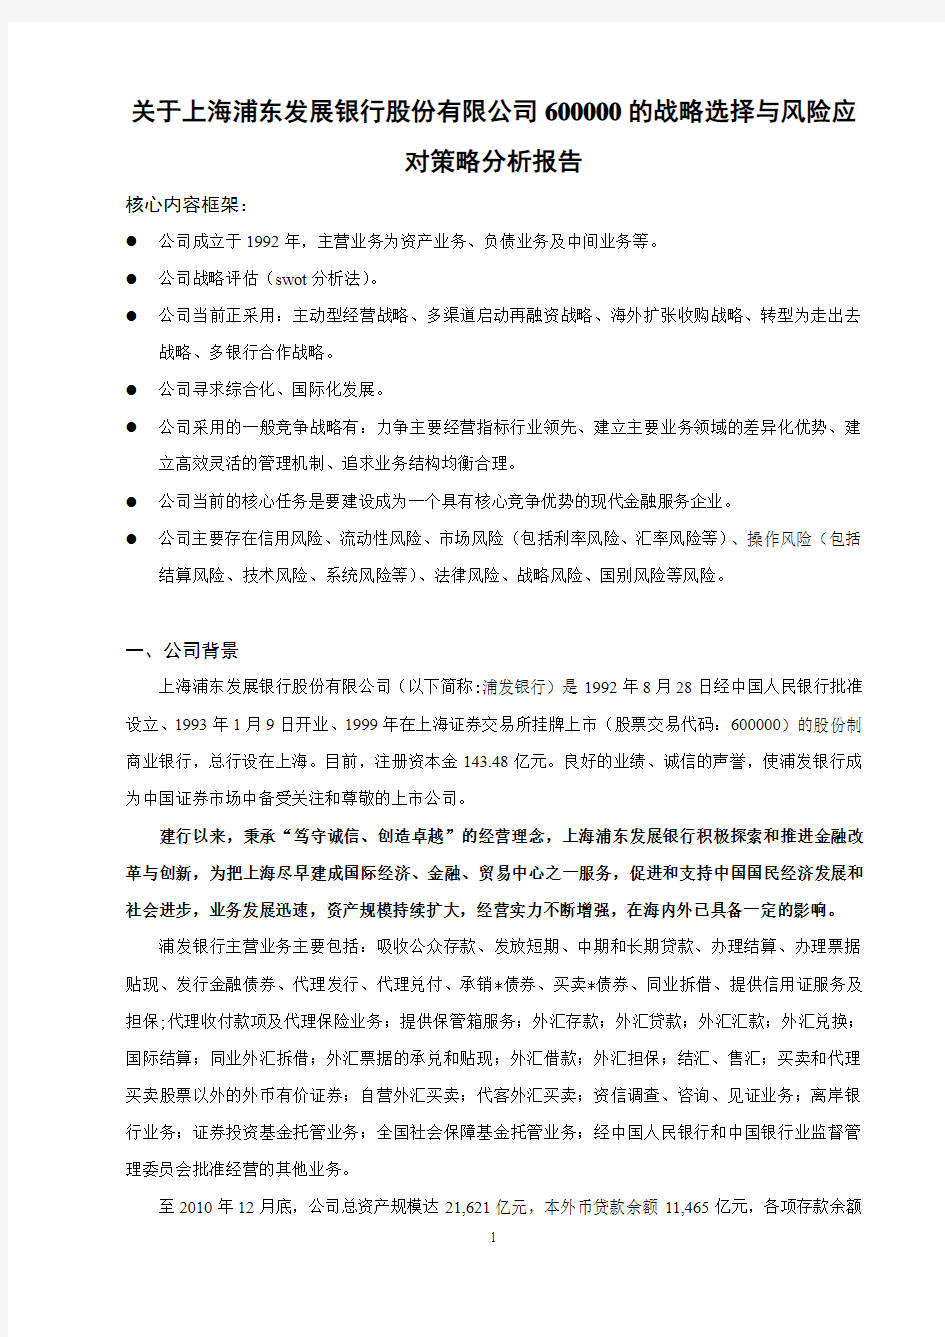 关于上海浦东发展银行股份有限公司600000的战略选择与风险应对策略分析报告